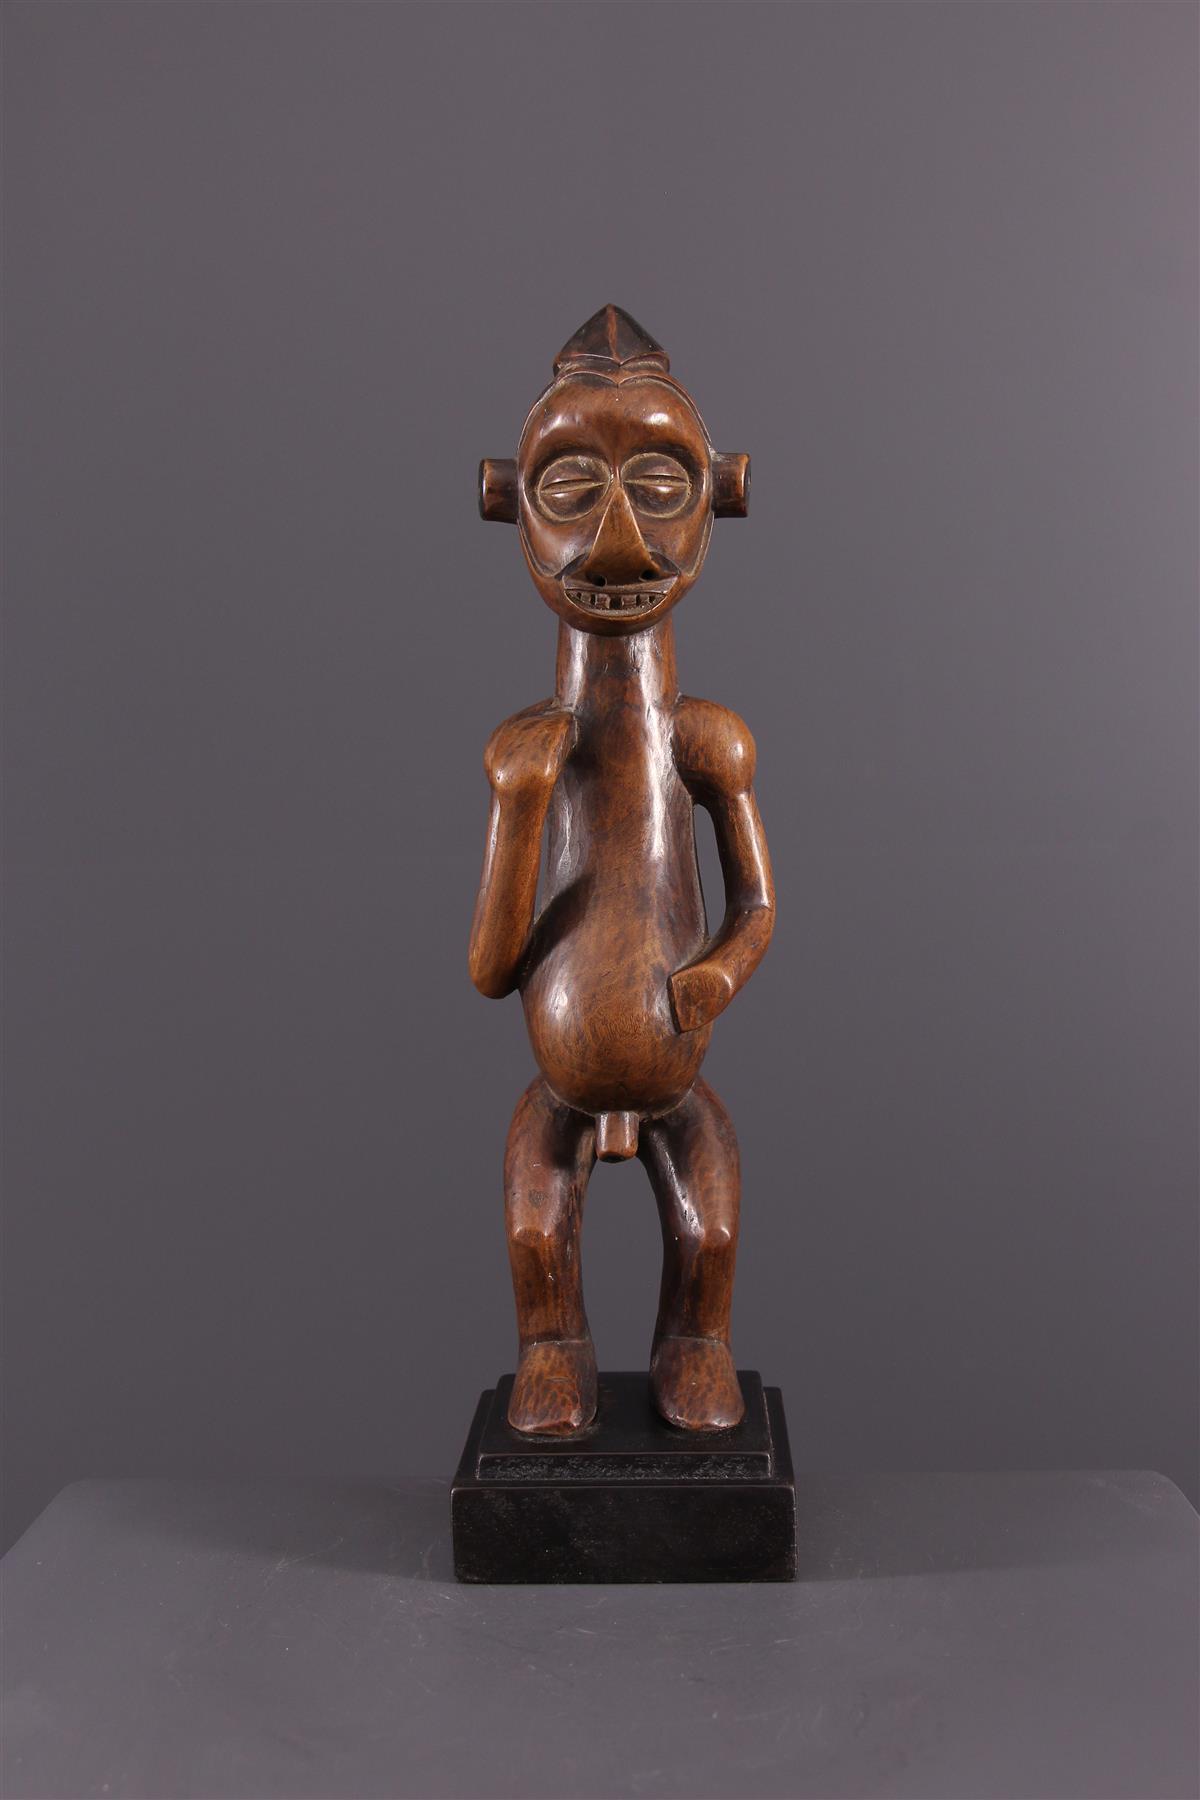 Yaka Estatueta - Arte tribal